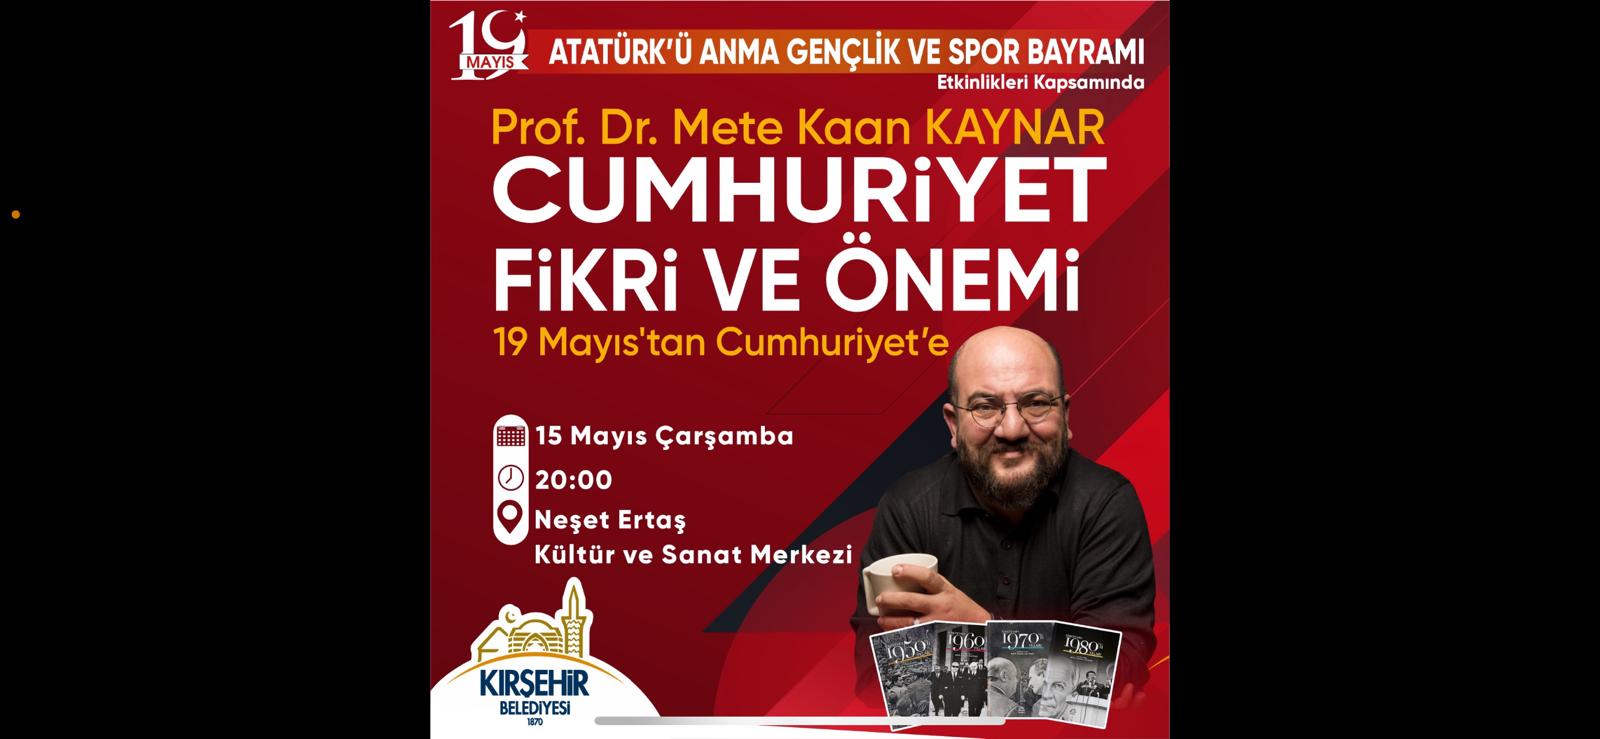 "CUMHURİYET FİKRİ VE ÖNEMİ" KONULU KONFERANS